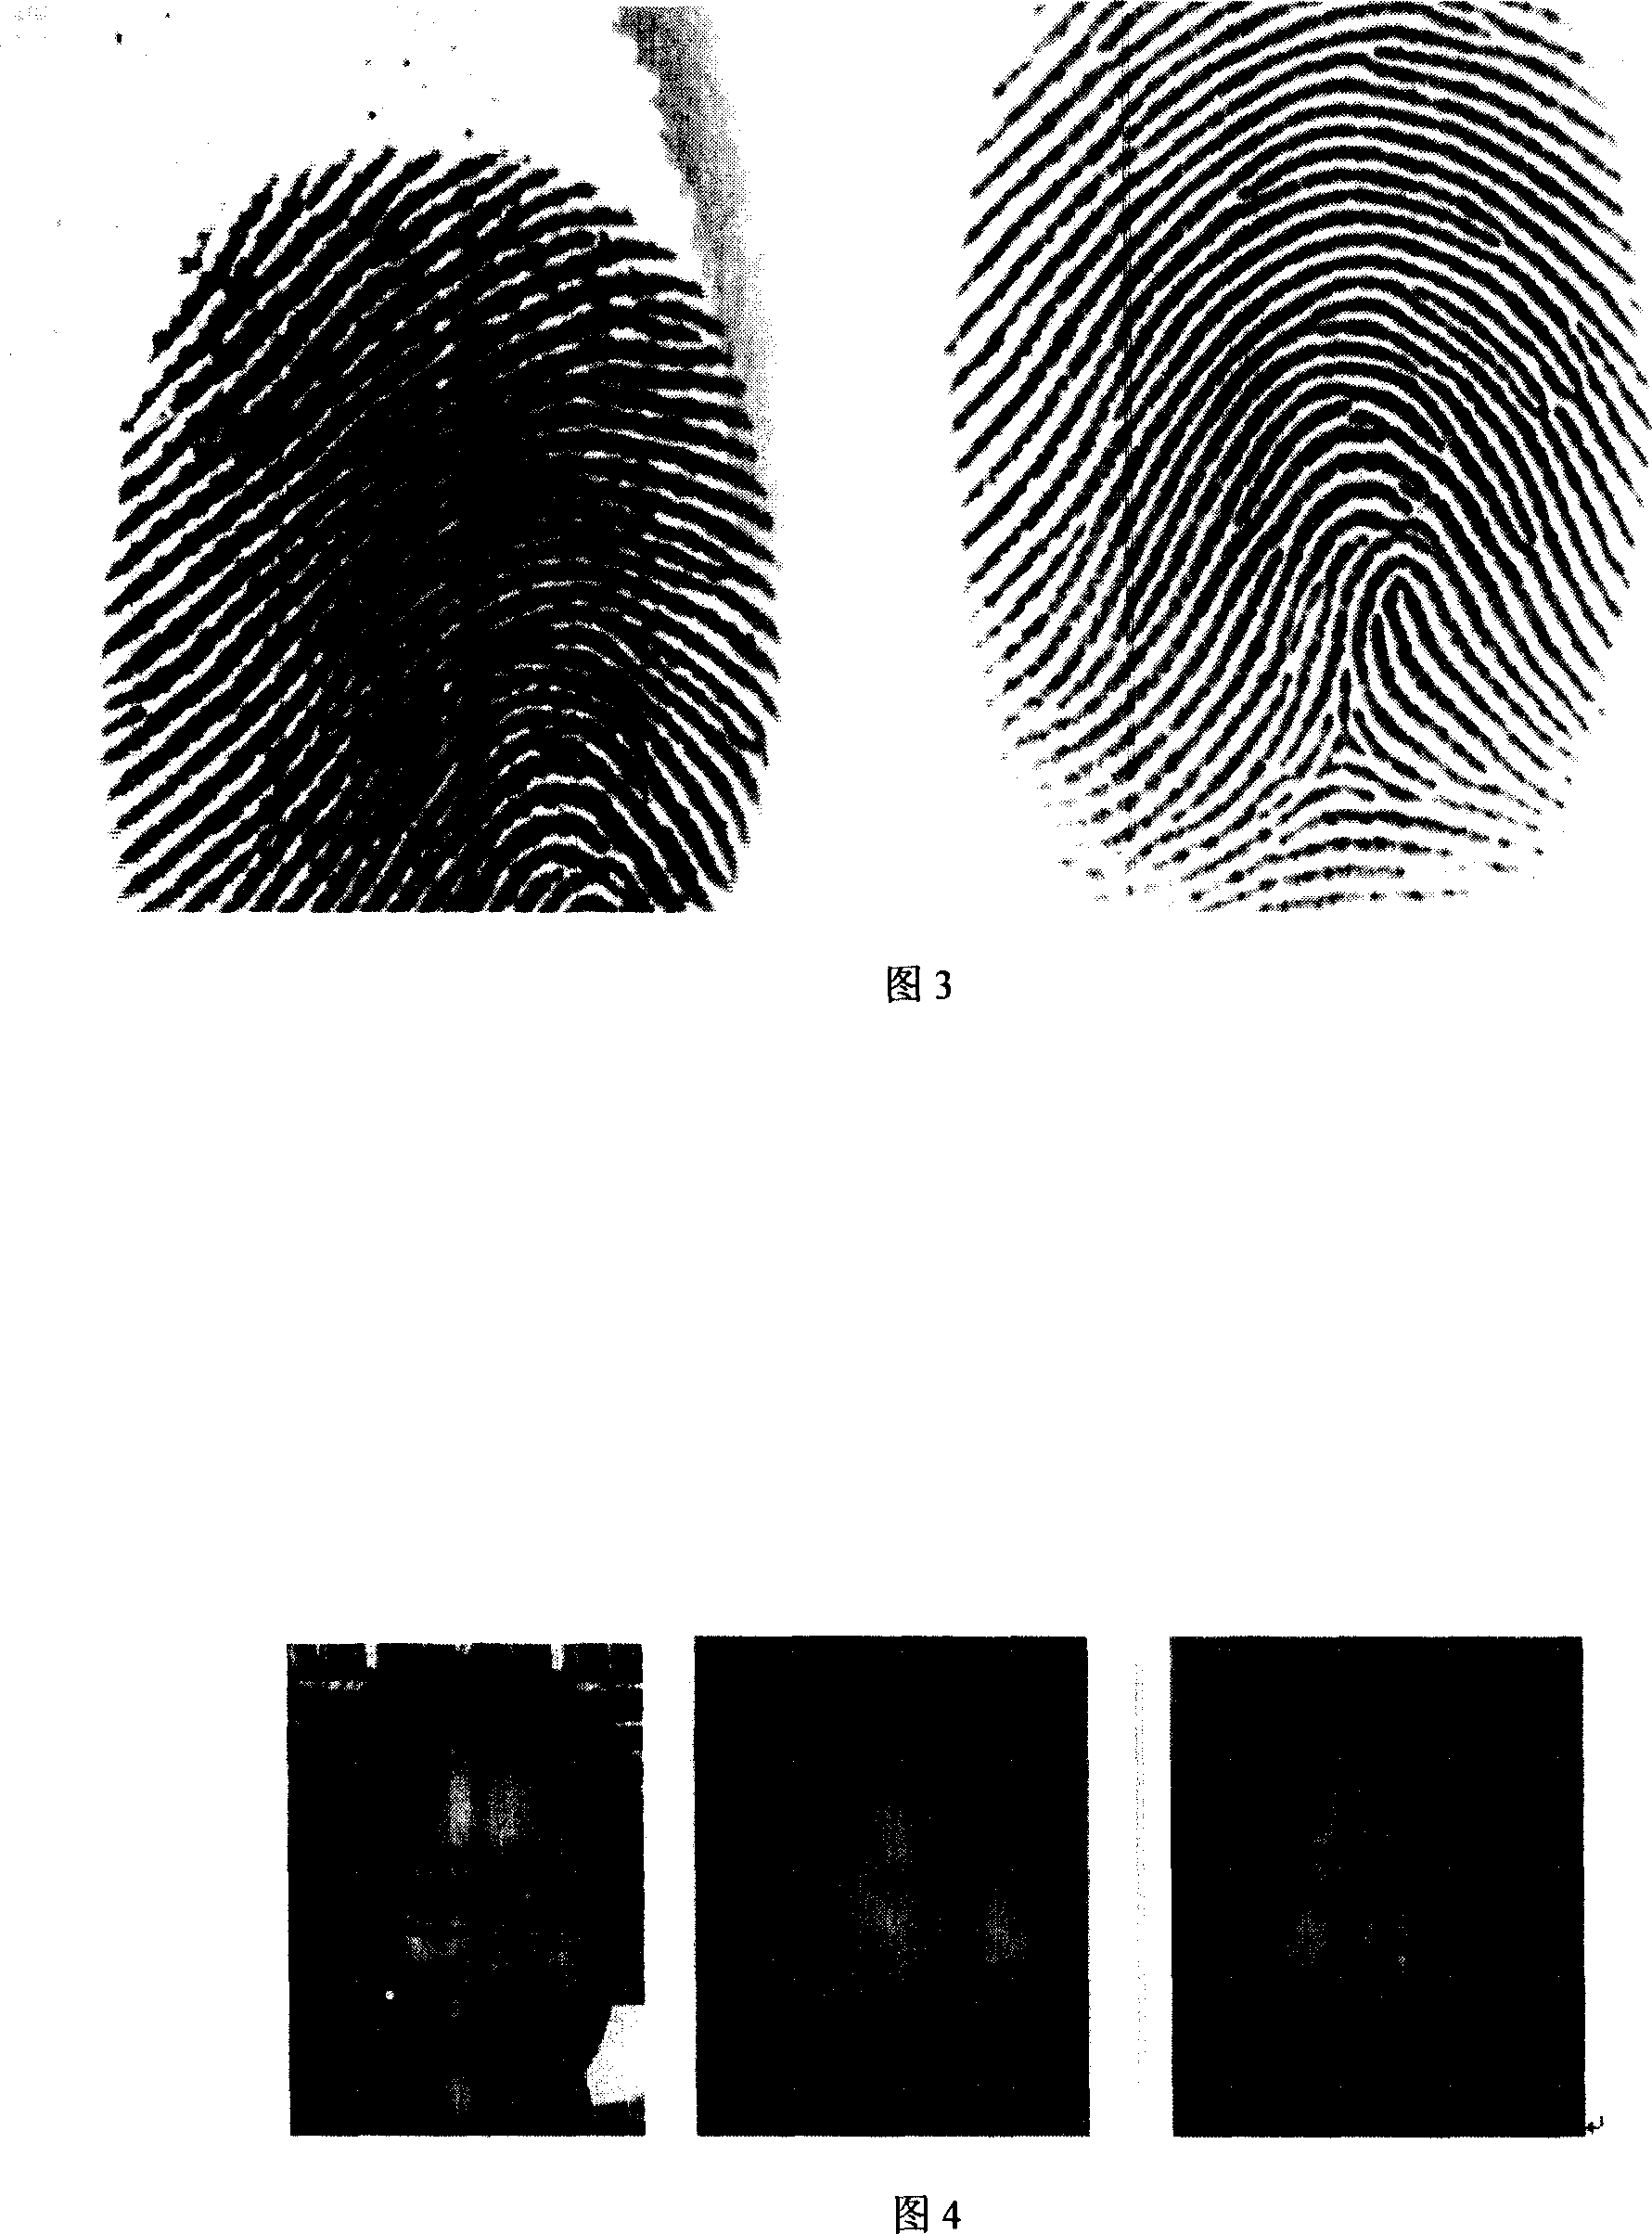 Method for binding/recovering key using fingerprint details